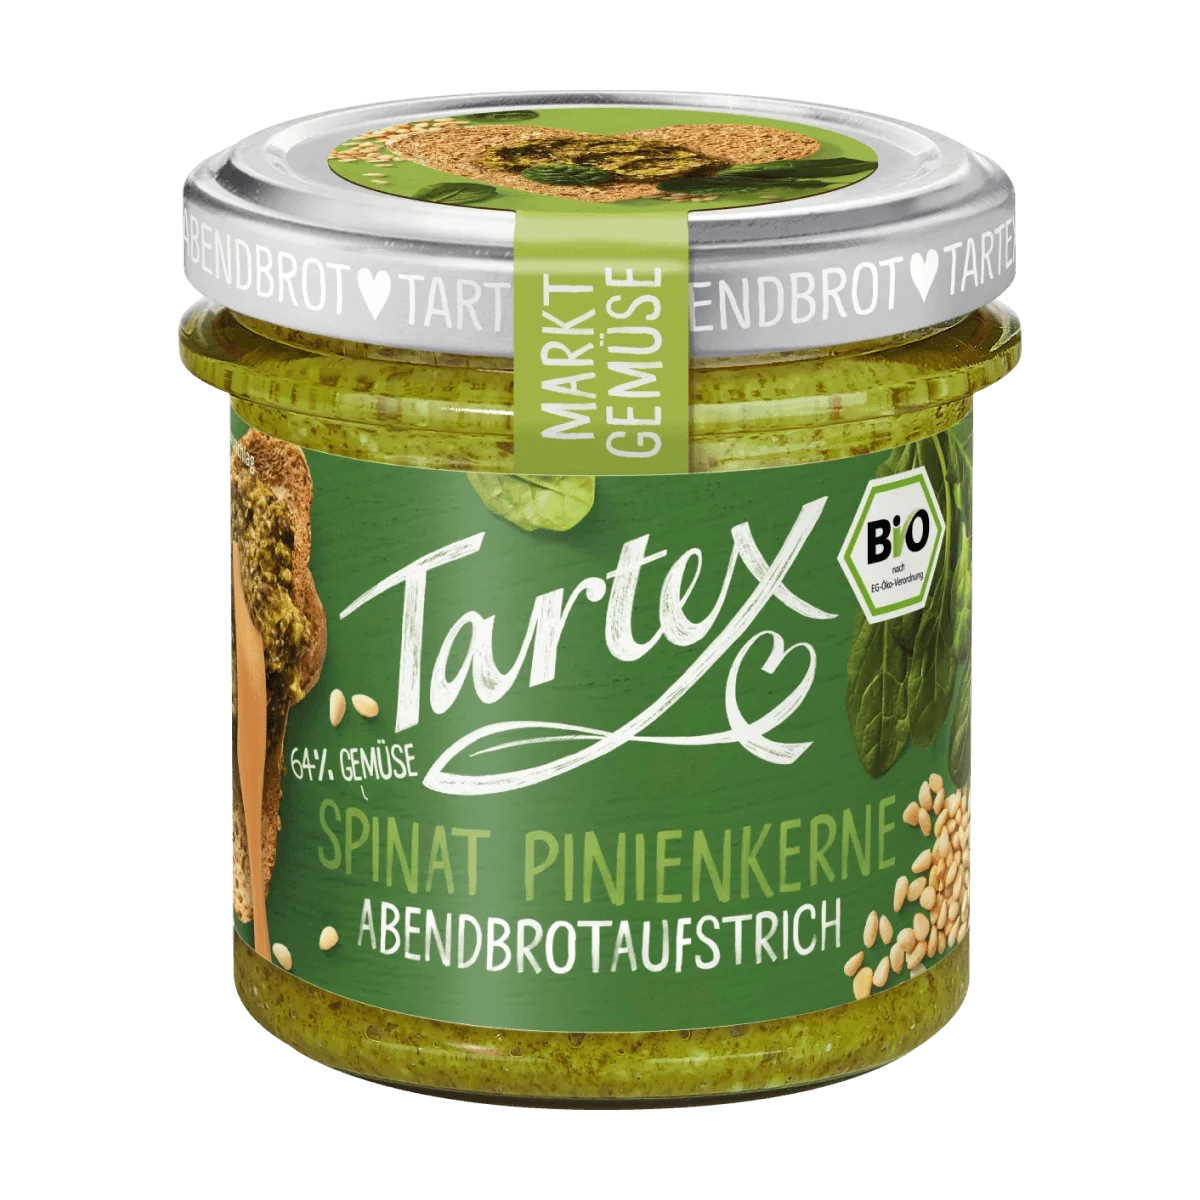 Tartex Brotaufstrich, Spinat Pinienkerne, 135 g